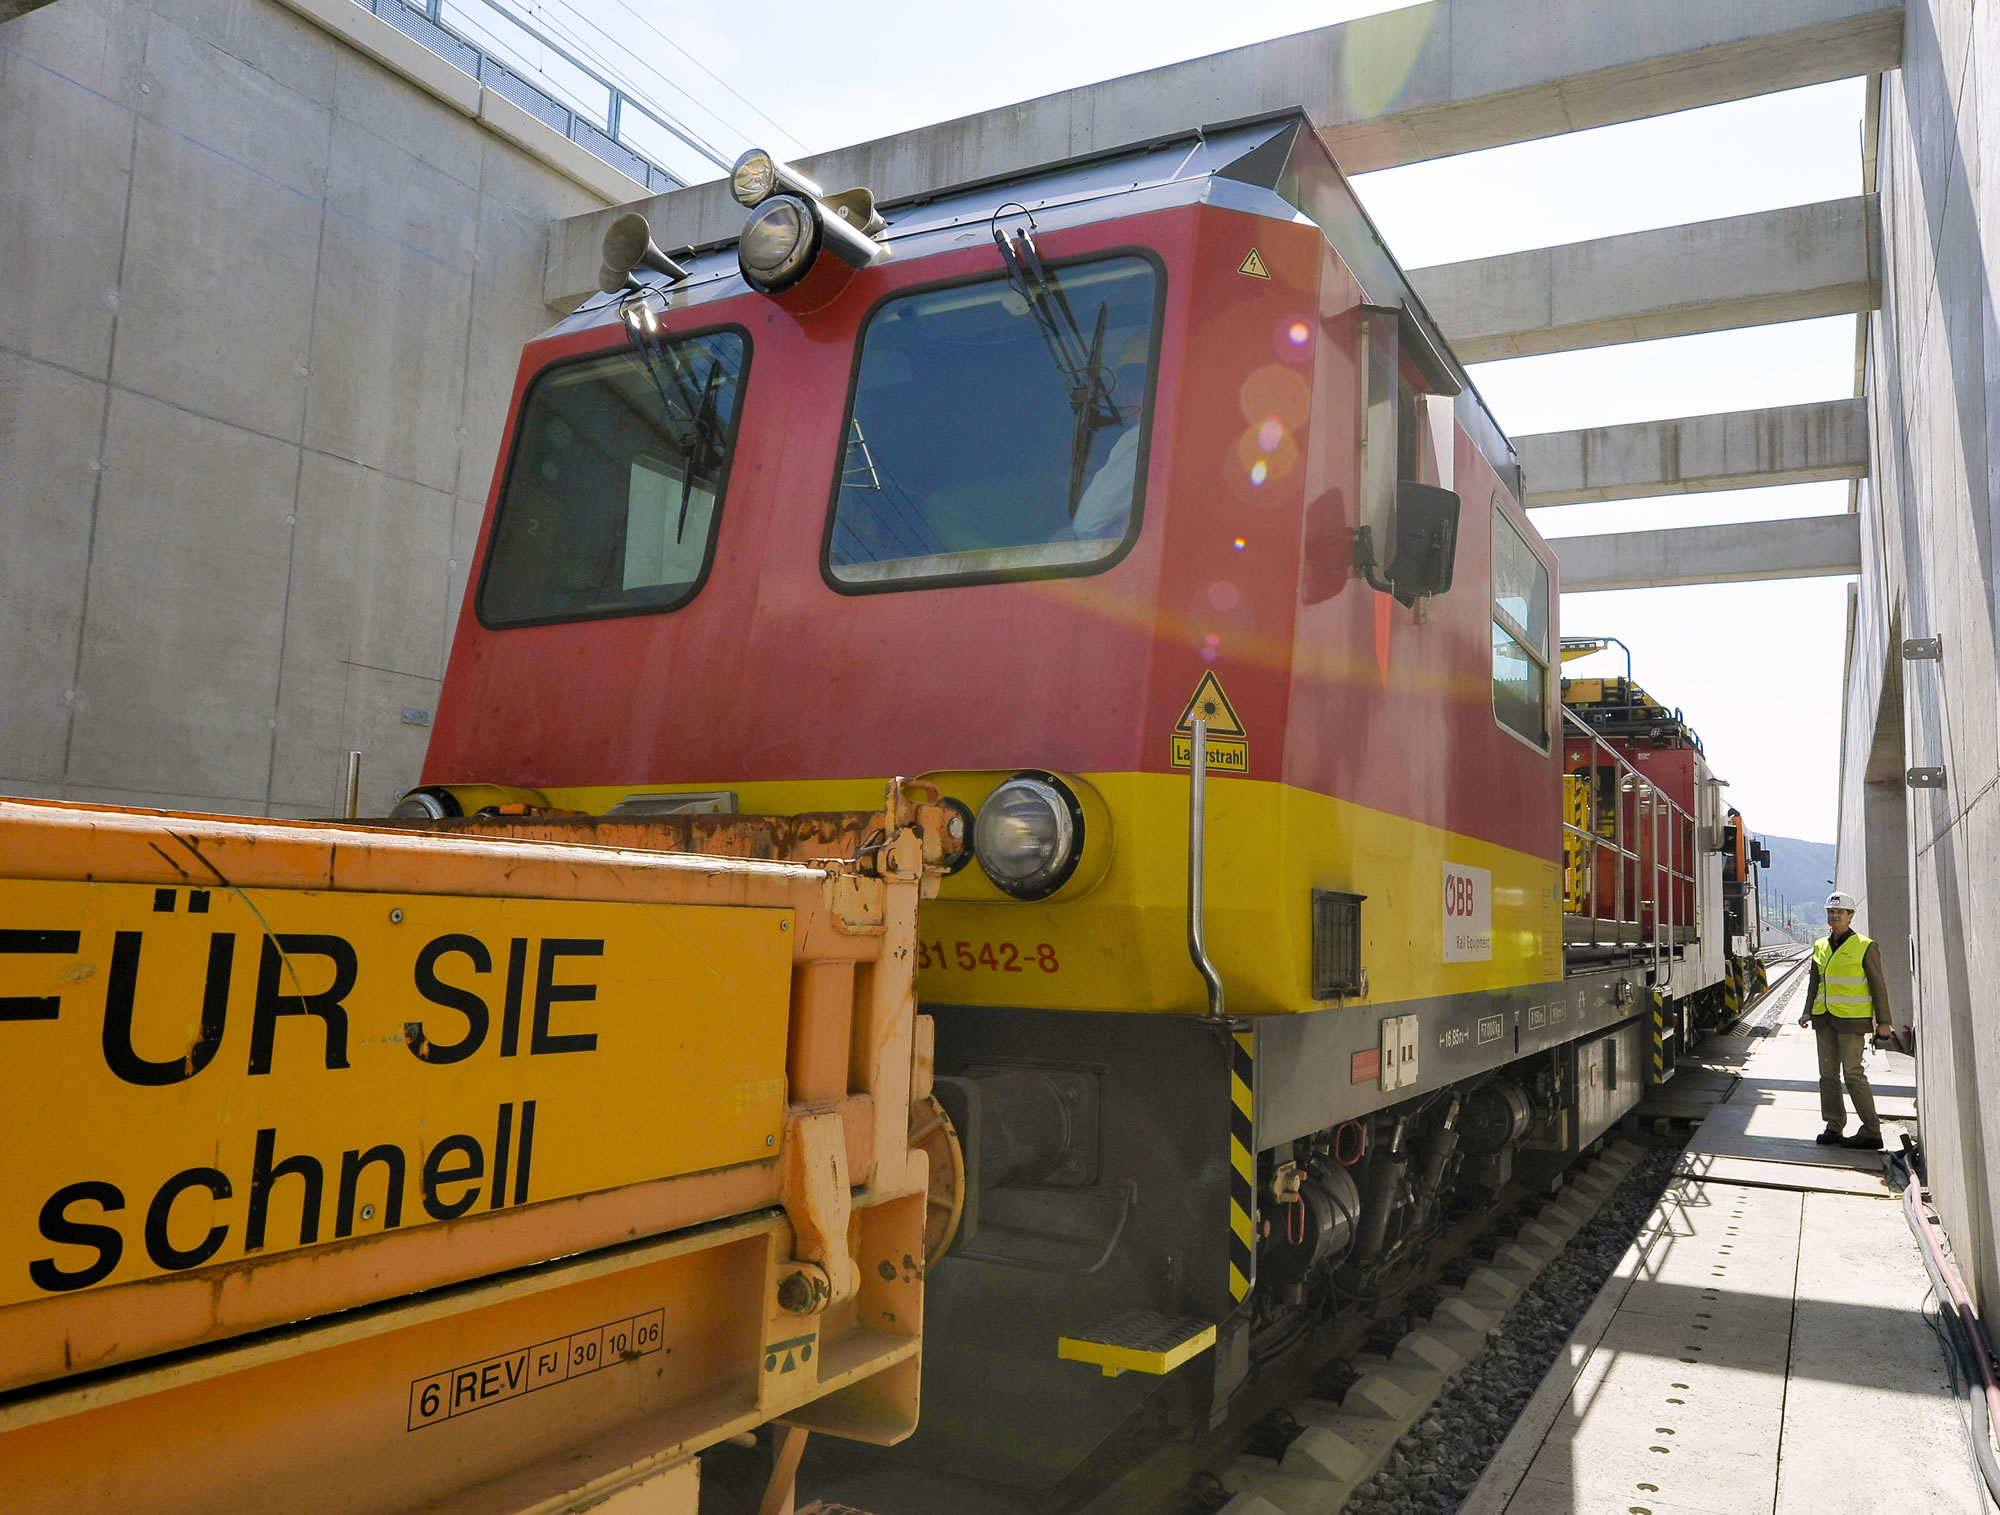 Κοντινό πλάνο σιδηροδρομικής μηχανής δίπλα στην οποία, στη δεξιά αποβάθρα, στέκεται ένας εργάτης του κατασκευαστικού τομέα με εξοπλισμό ασφαλείας, ο οποίος επιβλέπει τη μηχανή.